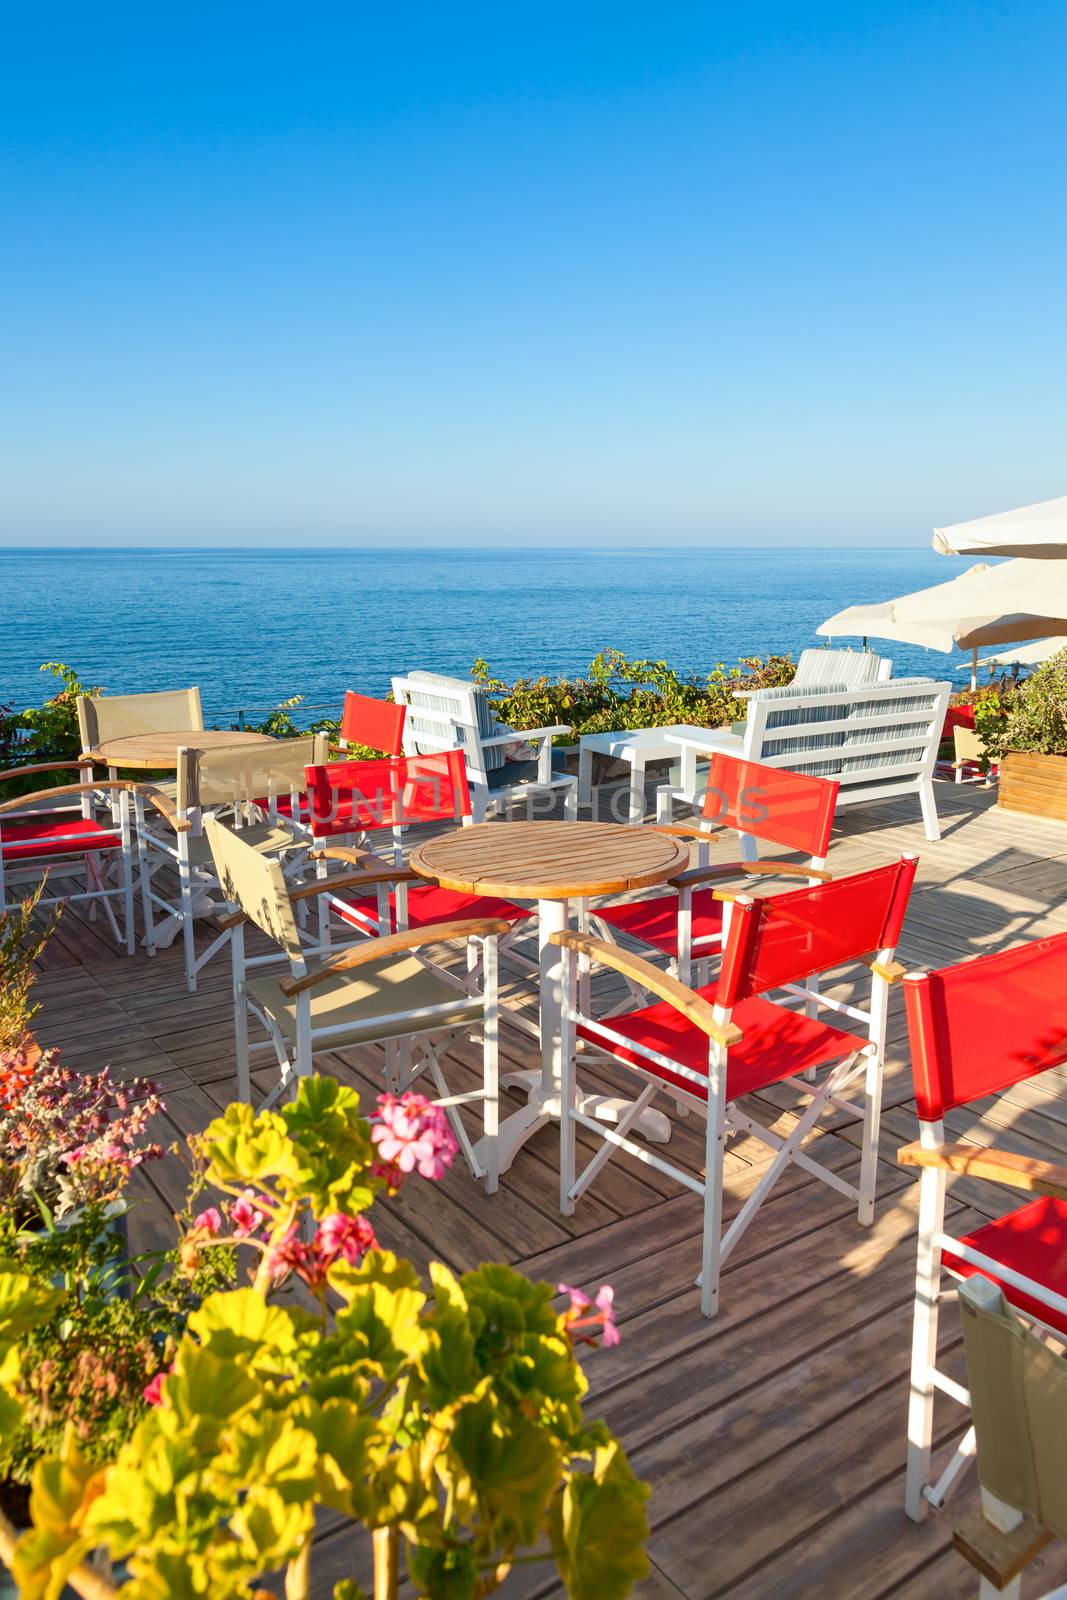 Seaside cafe terrace by naumoid